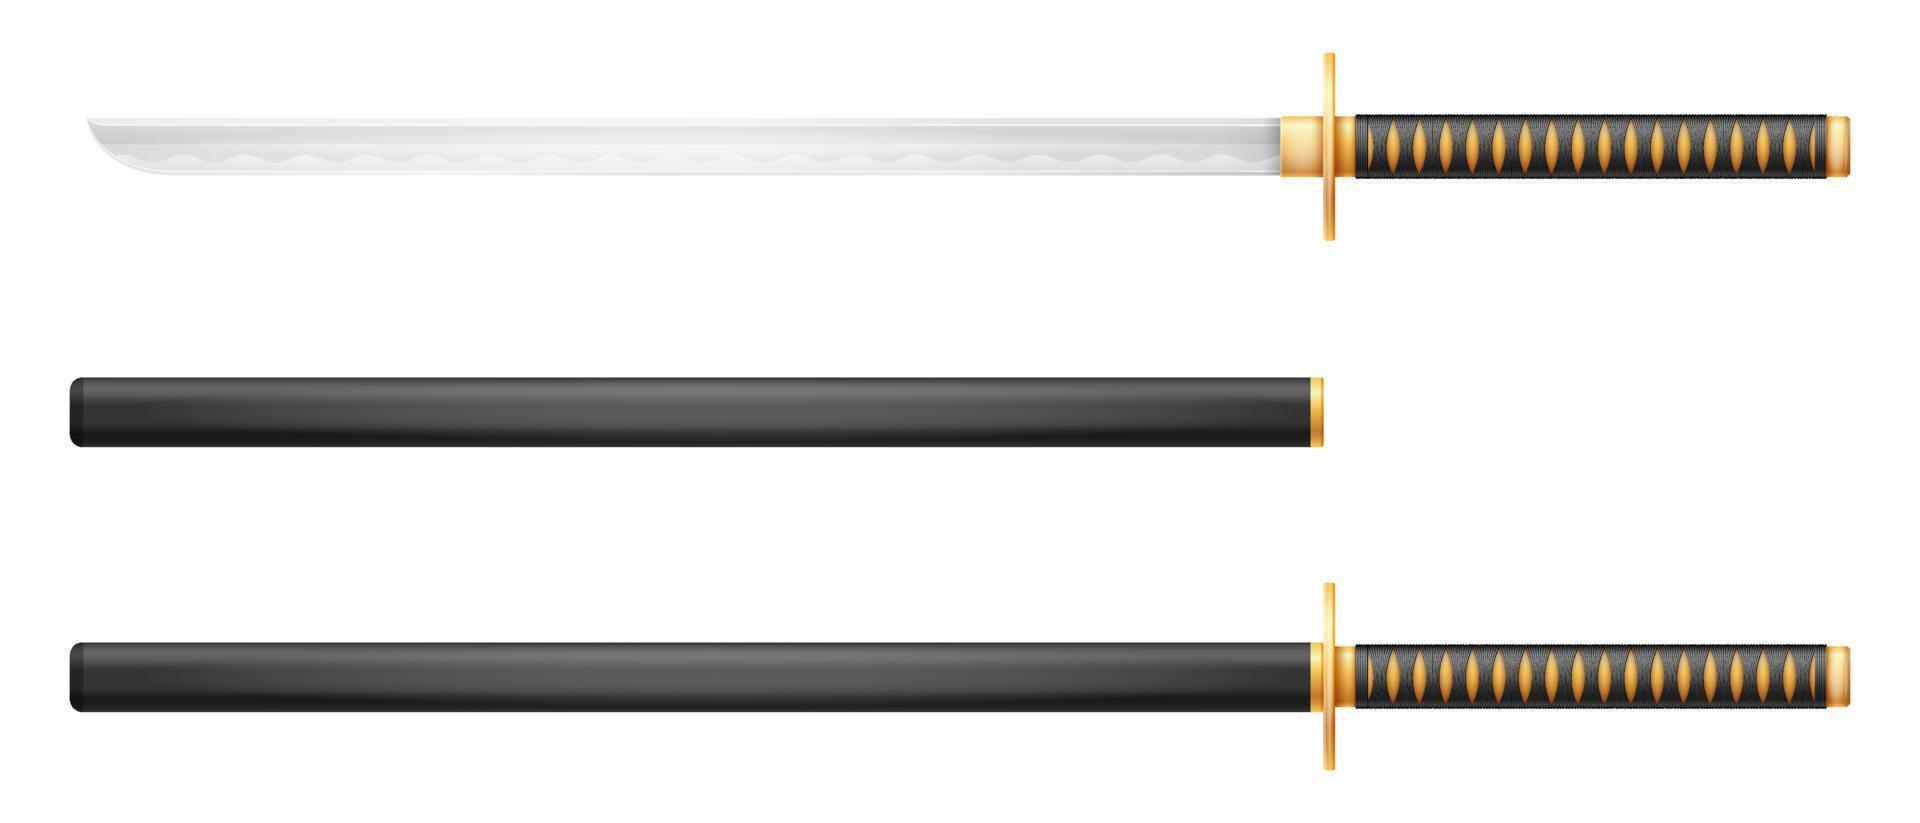 épée katana arme ninja guerrier japonais assassin illustration vectorielle isolée sur fond blanc vecteur